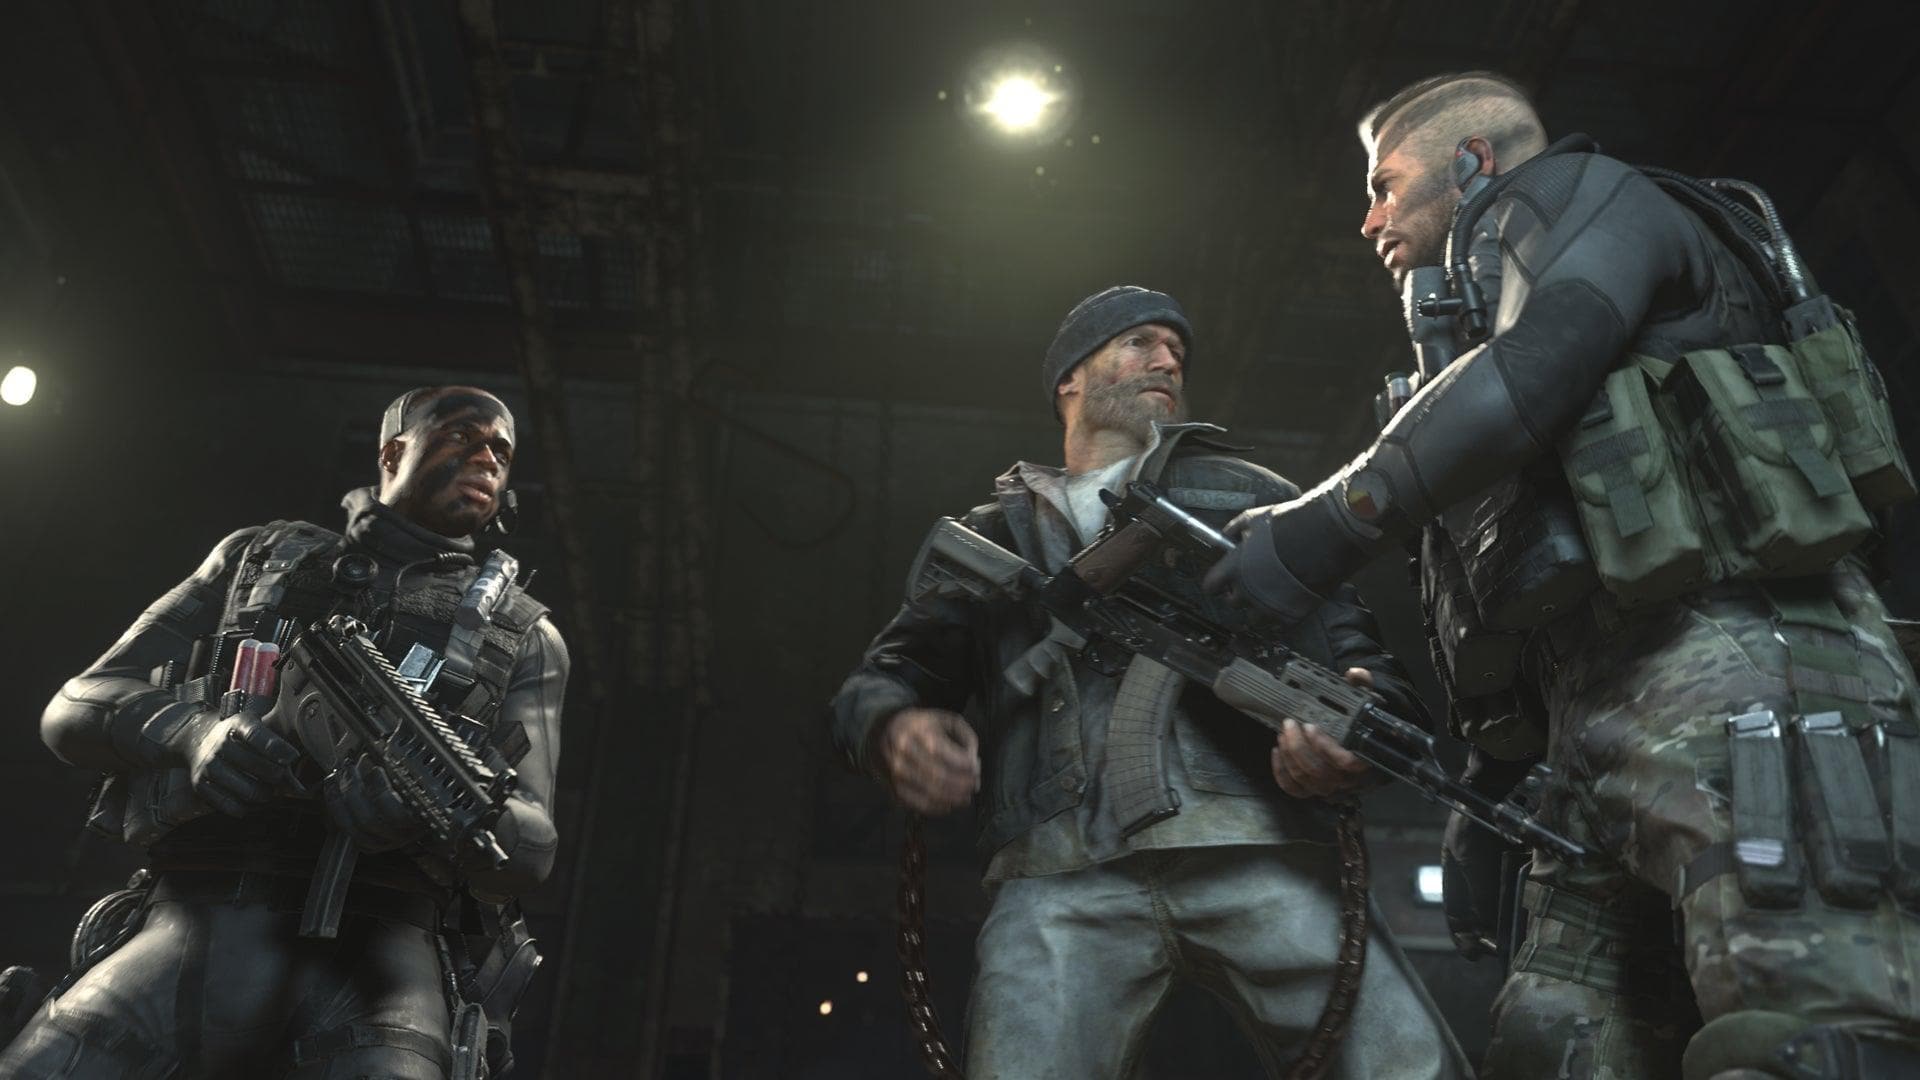 Call of Duty: Modern Warfare 2 (Cross-GEN Bundle Edition) - Xbox - EXON - גיימינג ותוכנות - משחקים ותוכנות למחשב ולאקס בוקס!